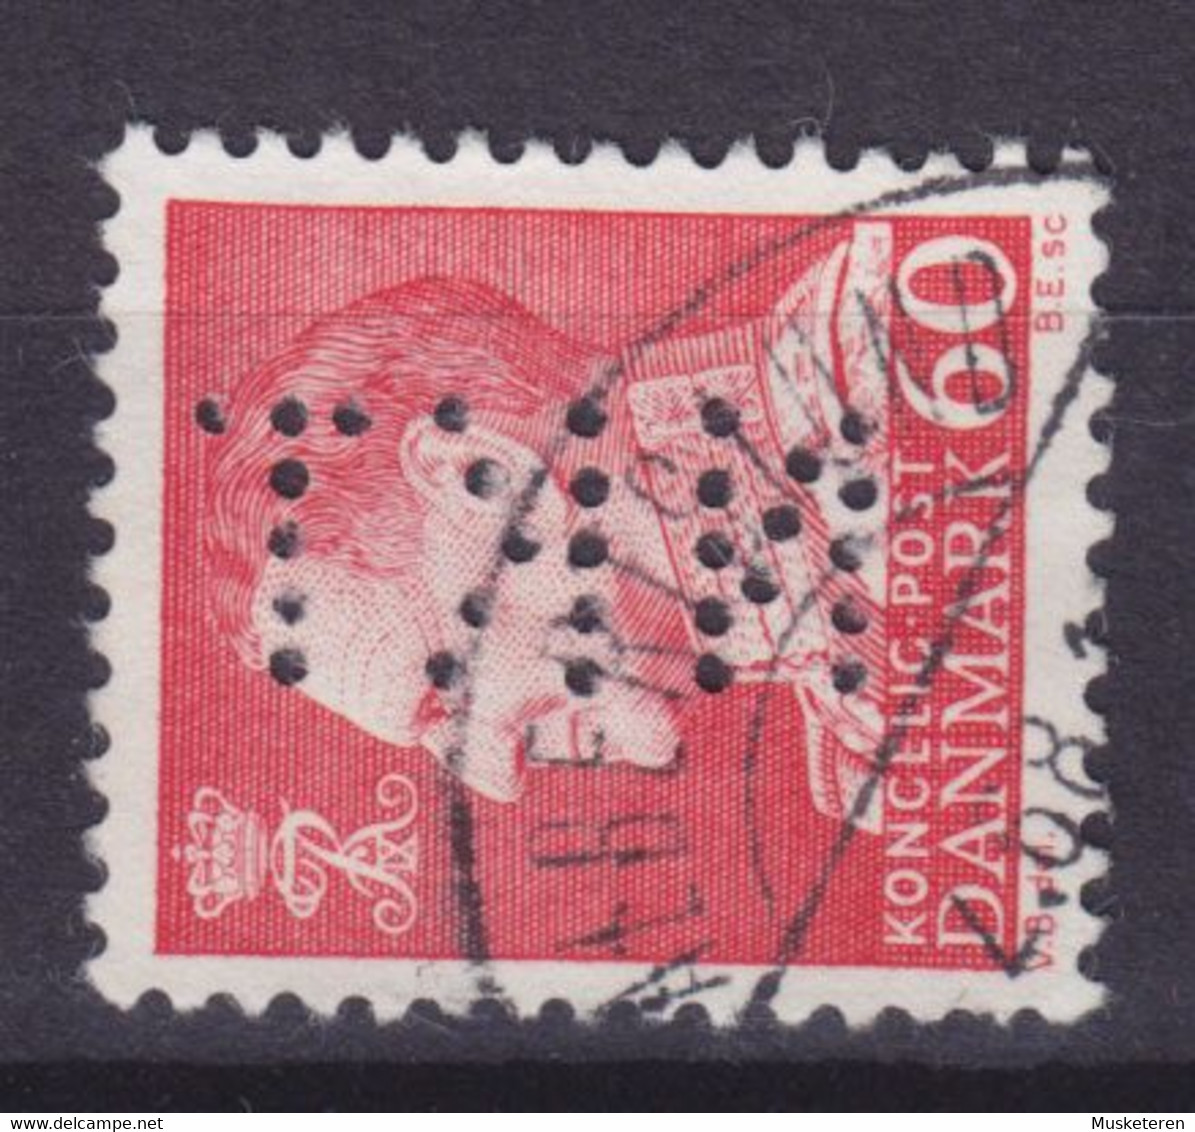 Denmark Perfin Perforé Lochung (N32) 'NKT' Nordisk Kabel- Og Traadfabriker, København Fr. IX. Stamp (2 Scans) - Varietà & Curiosità